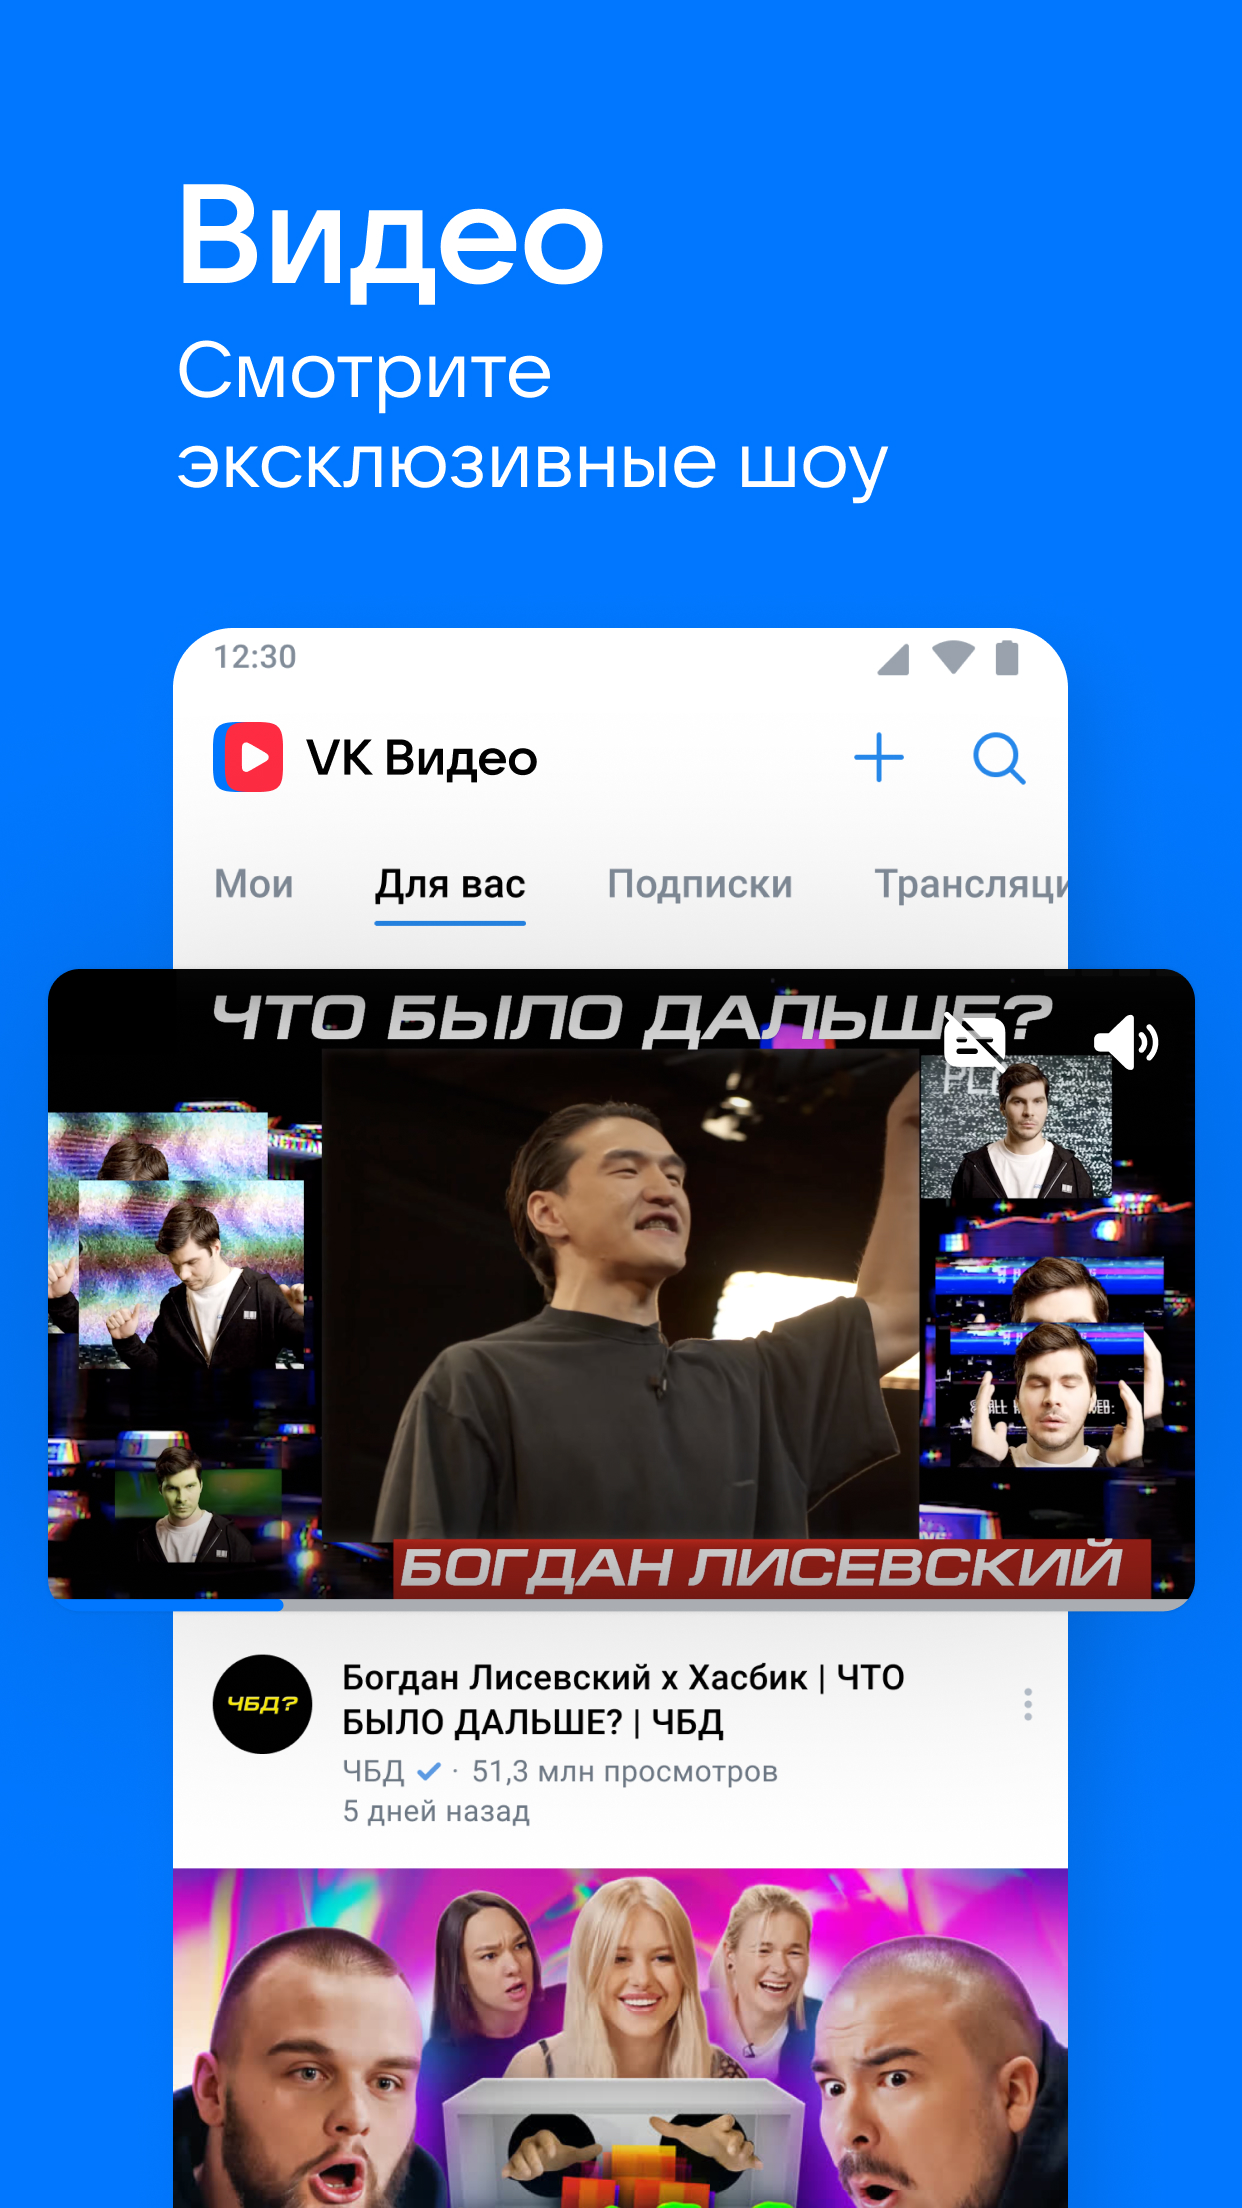 Как получать музыку из ВКонтакте в году / Хабр